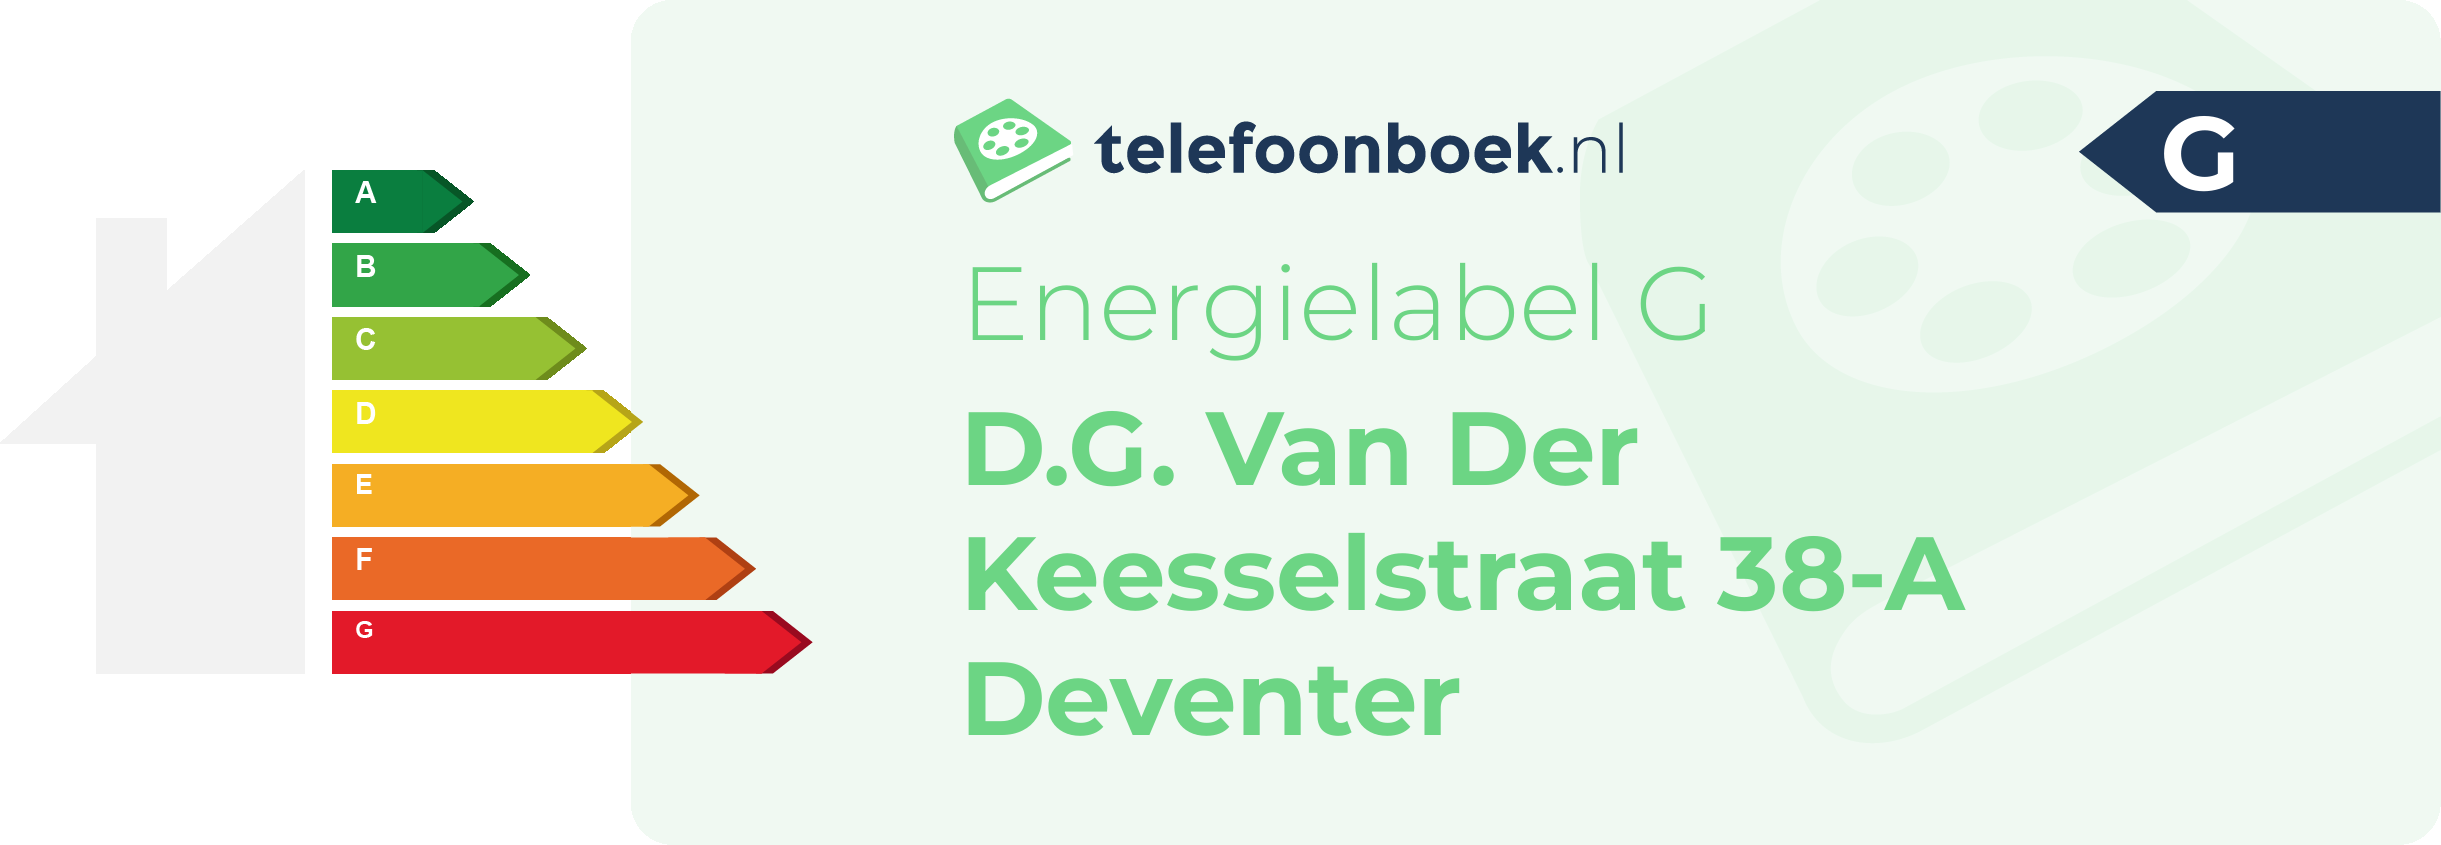 Energielabel D.G. Van Der Keesselstraat 38-A Deventer